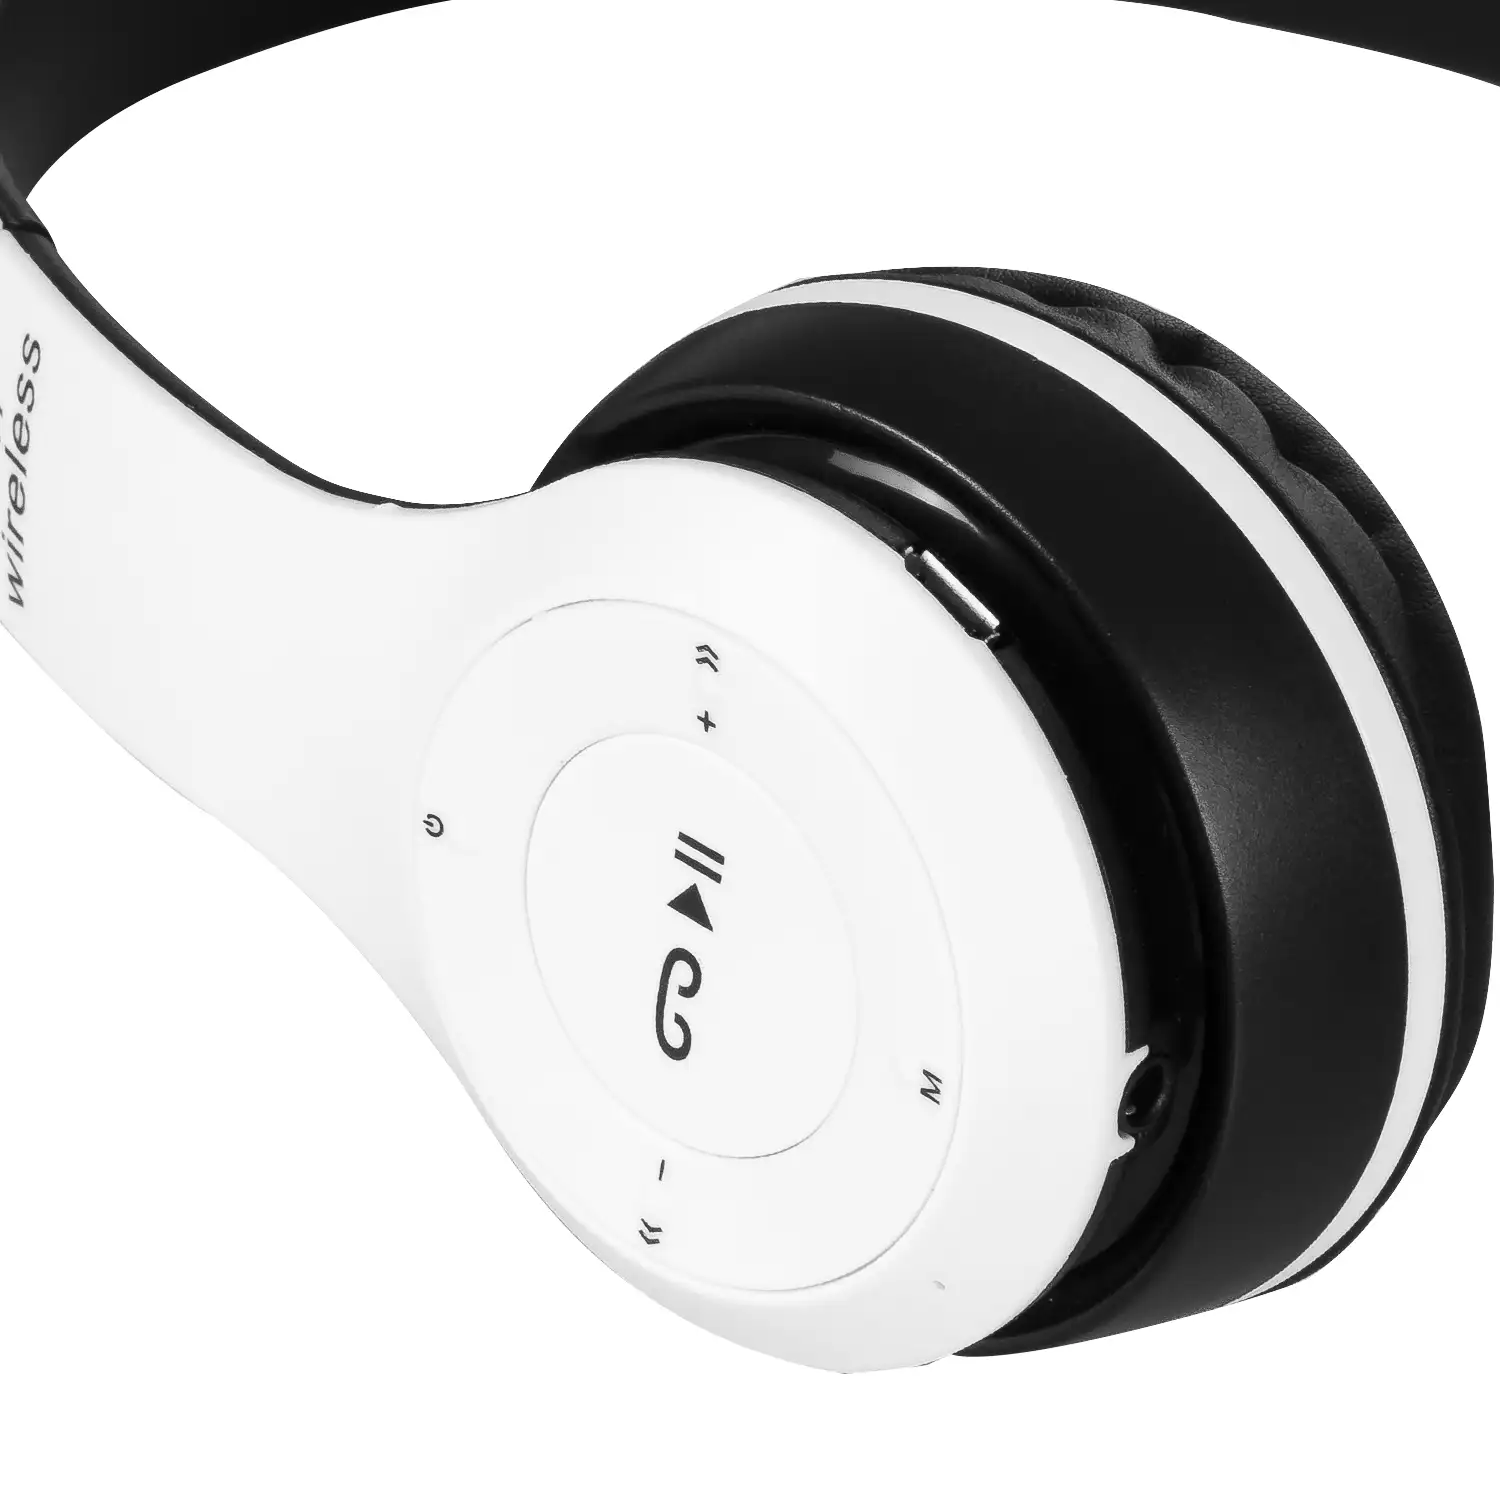 Cascos auriculares P47 Bluetooth 5.0 +EDR con radio FM incorporada y lector  de Micro SD.